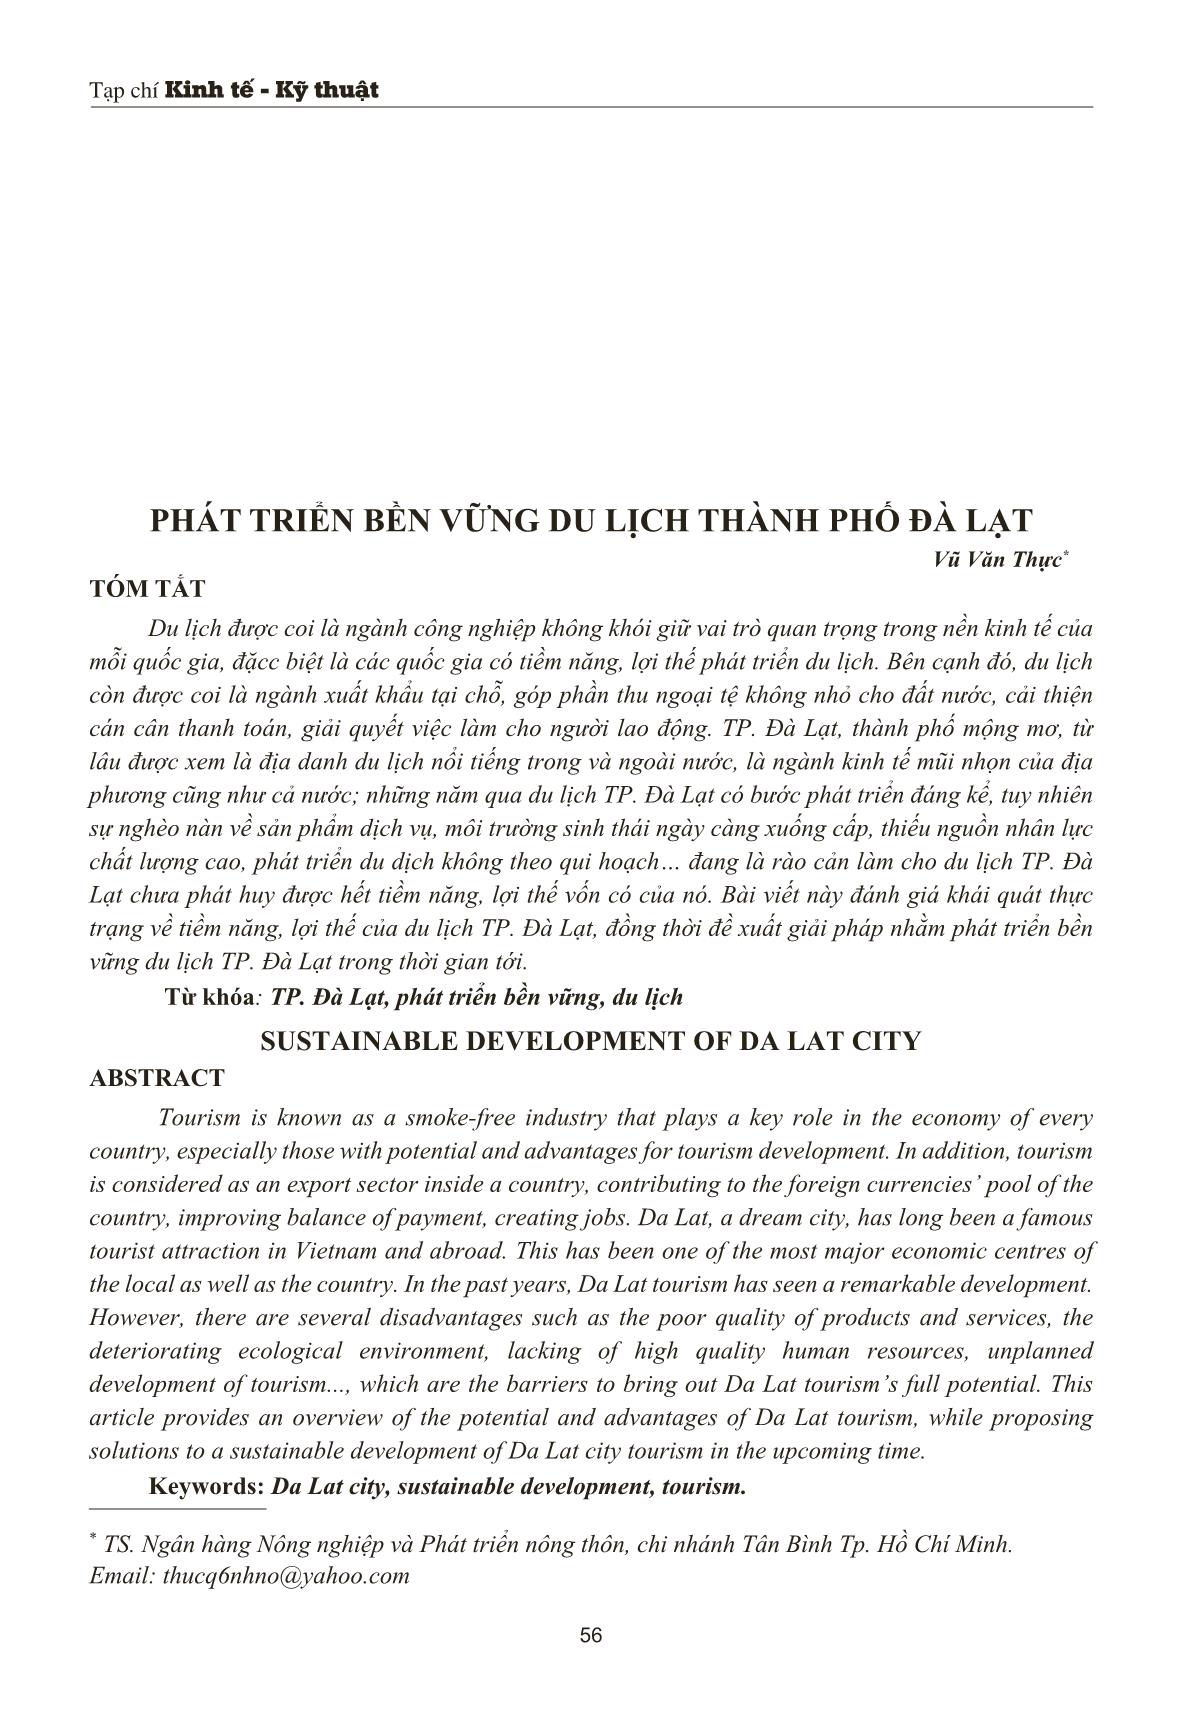 Phát triển bền vững du lịch thành phố Đà Lạt trang 1